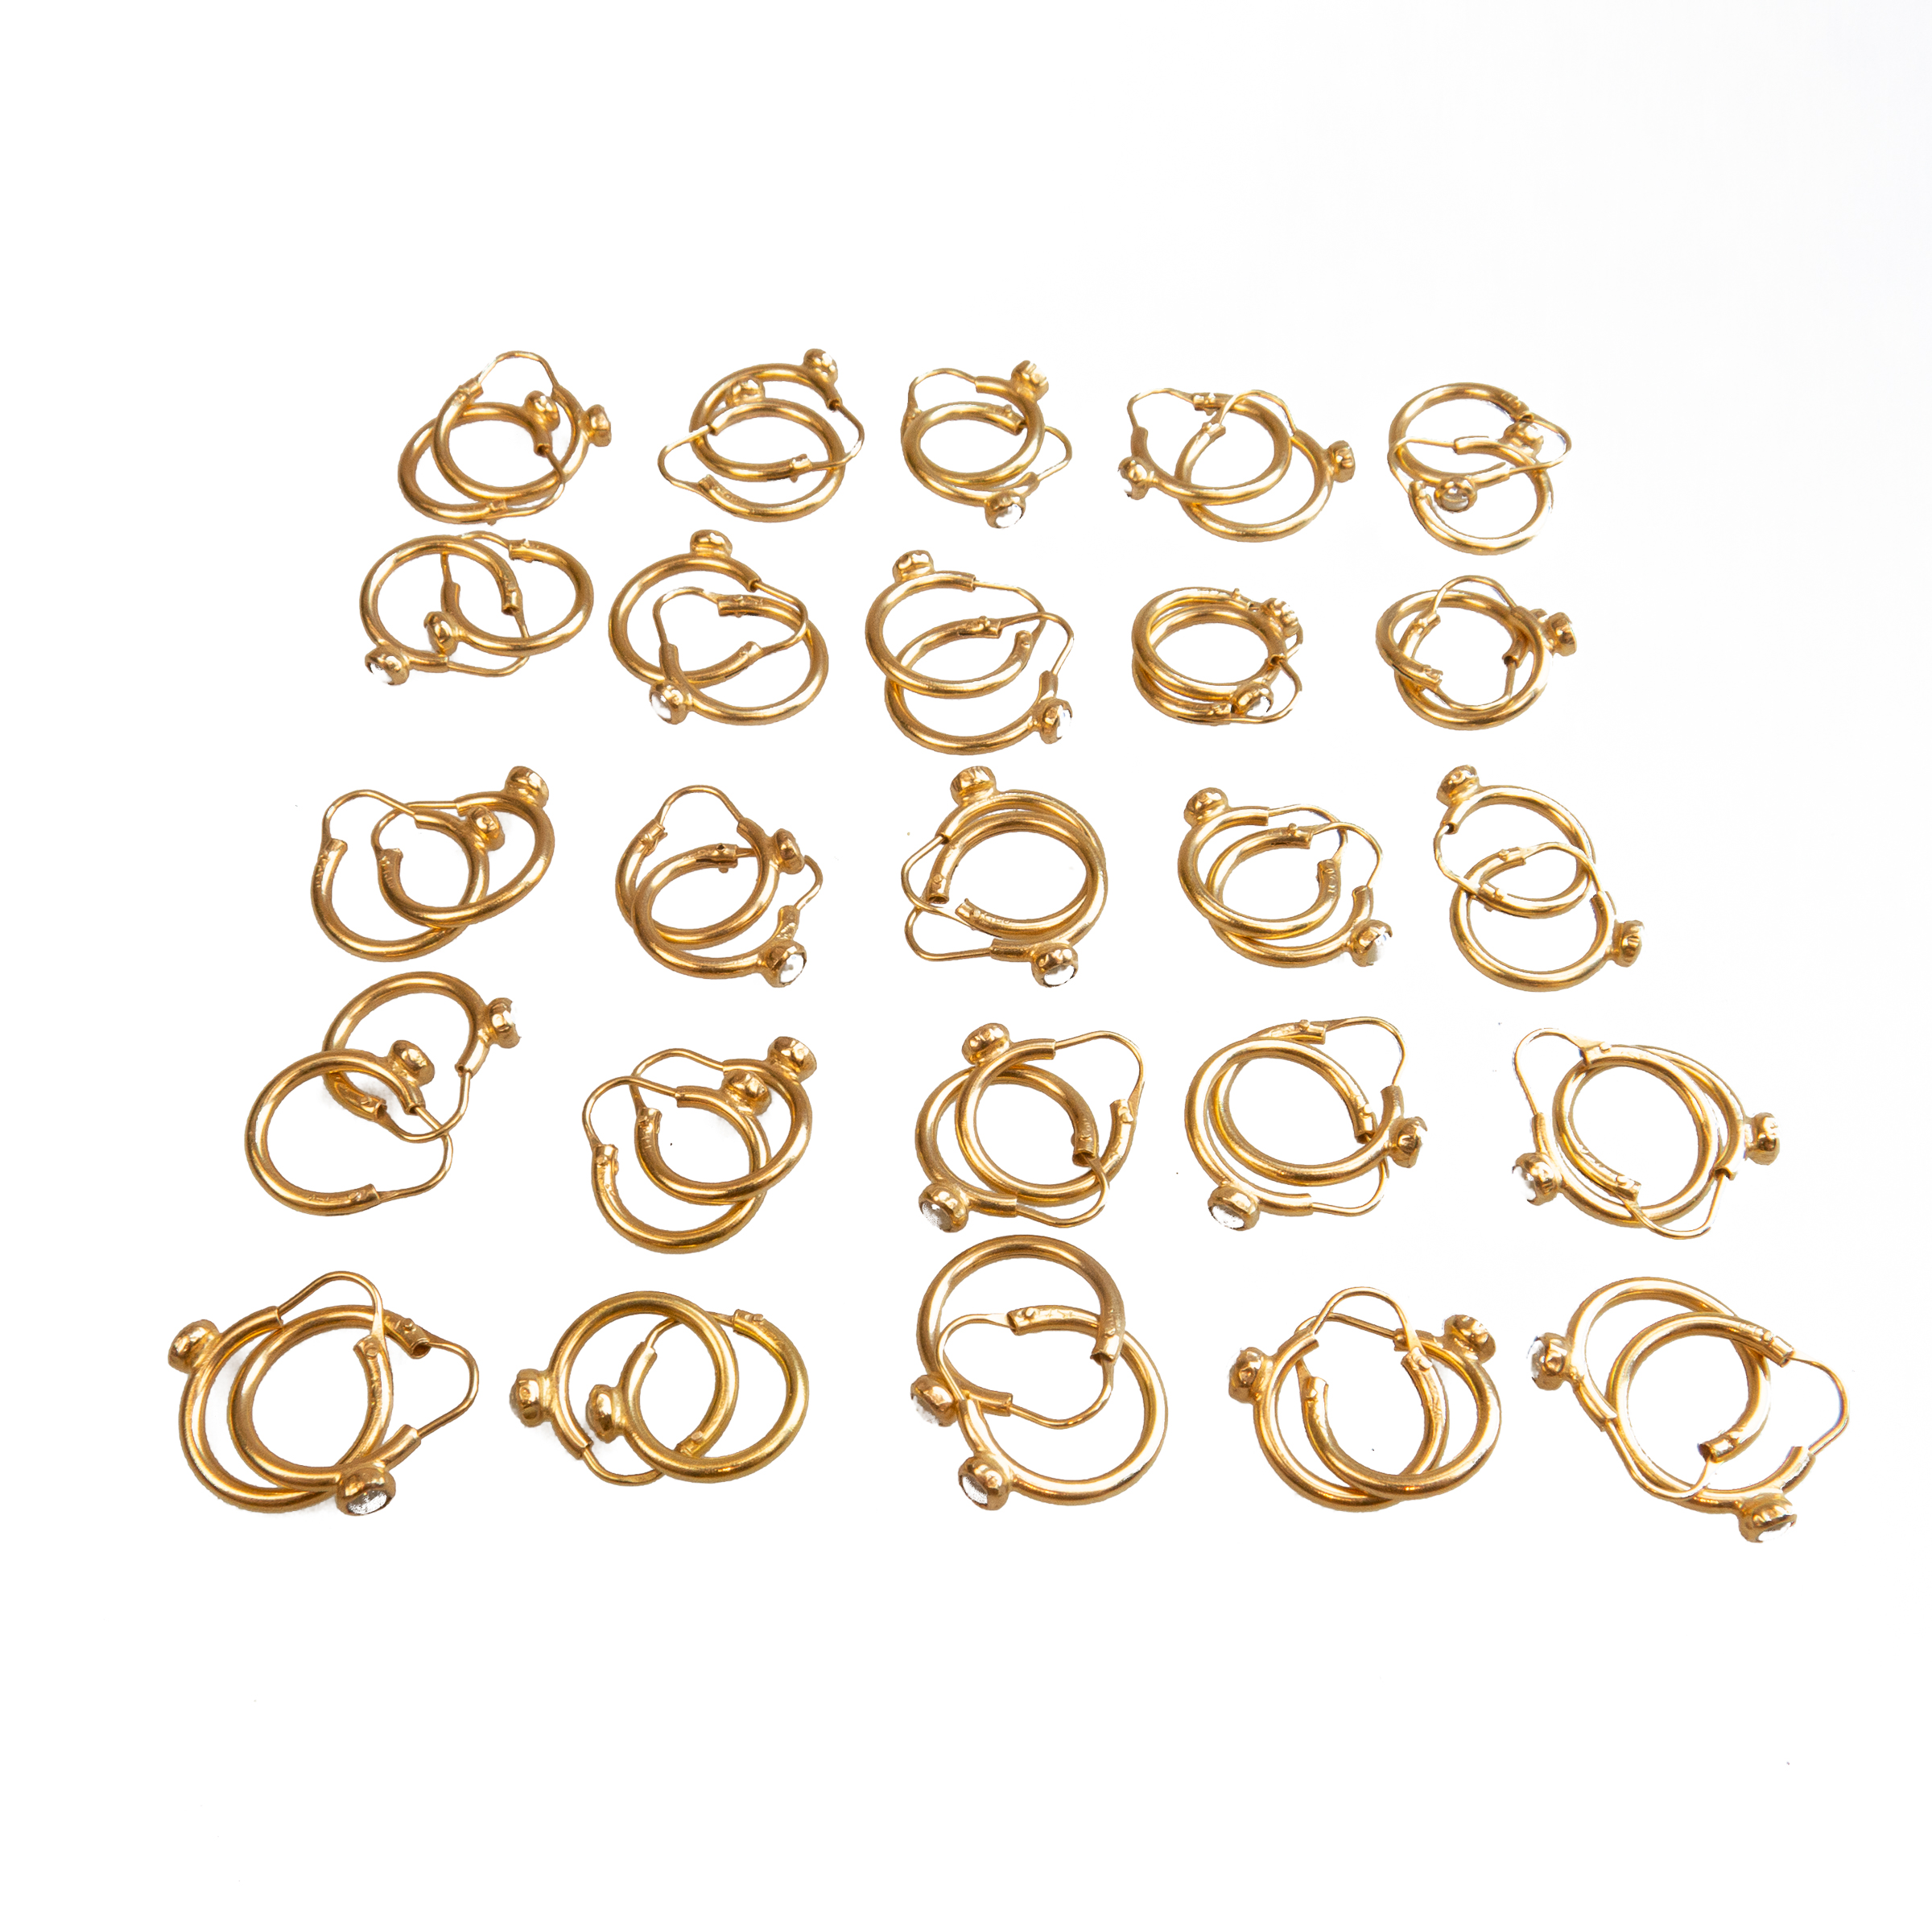 25 x Pairs Of 18k Yellow Gold Hoop Earrings